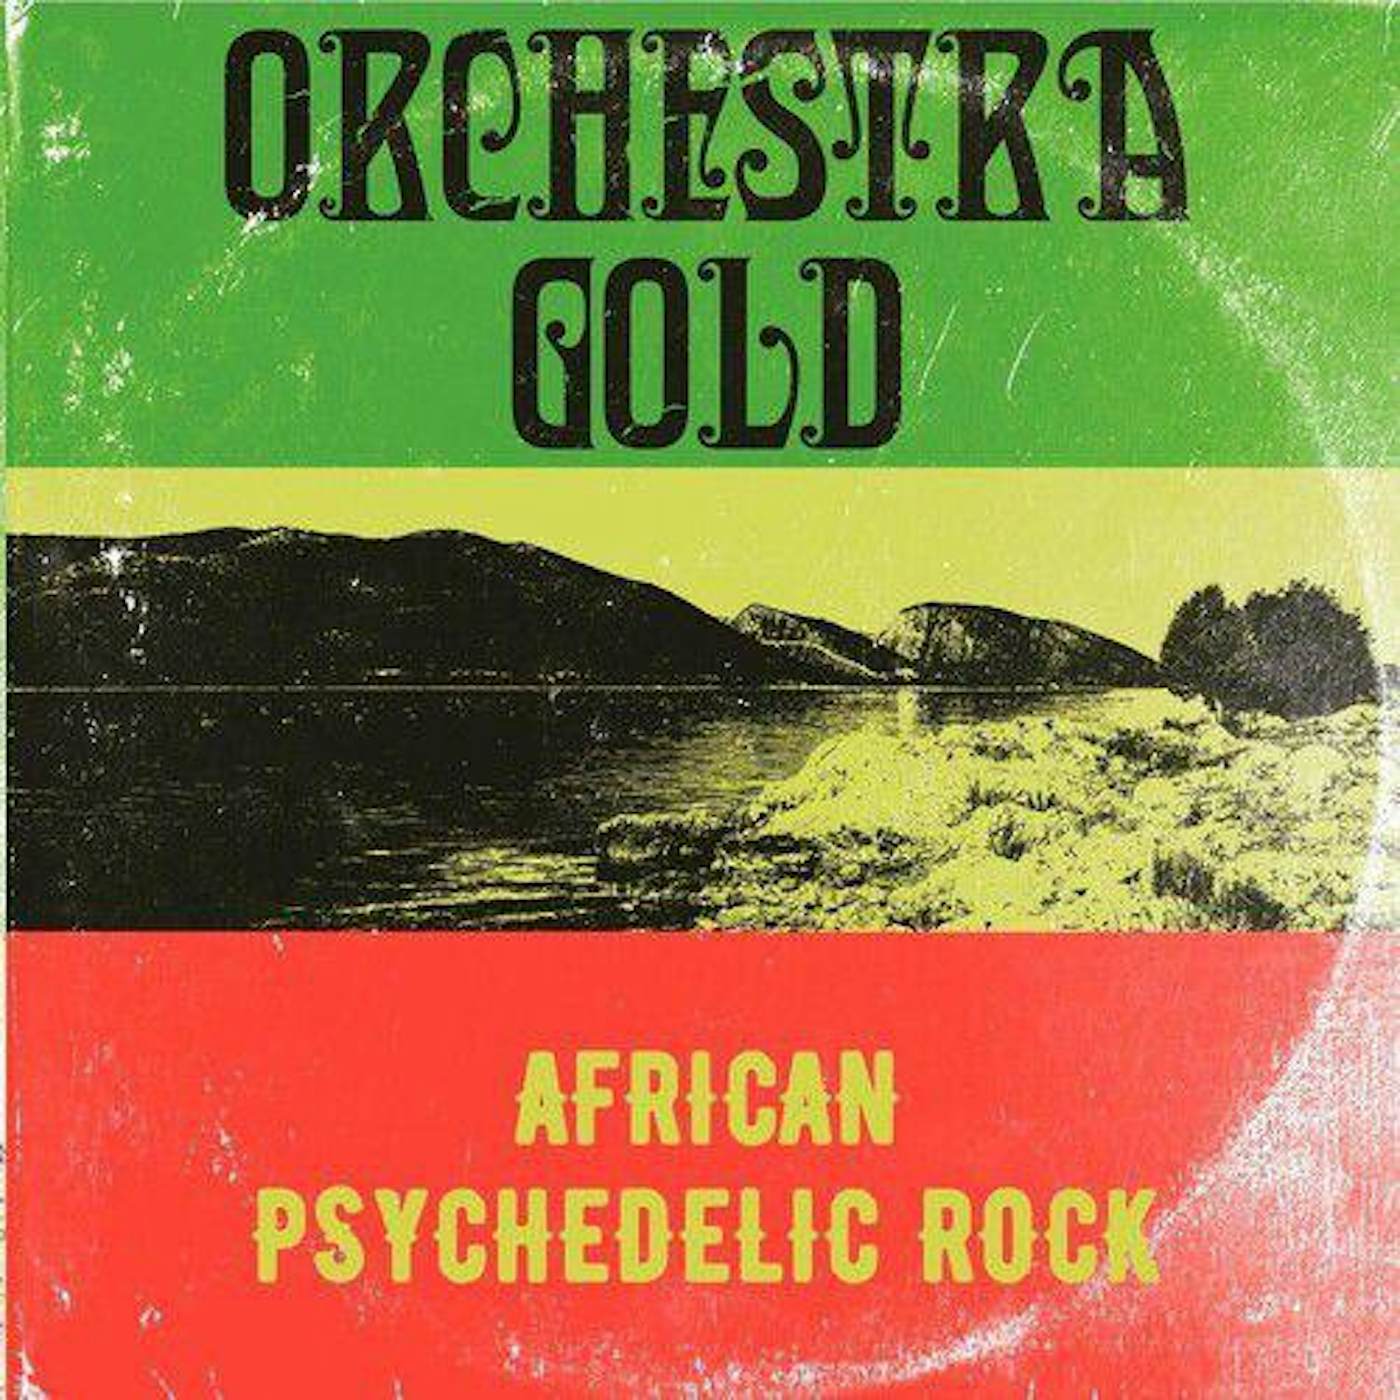 maternal Besiddelse Henstilling Orchestra Gold African Psychedelic Rock Vinyl Record